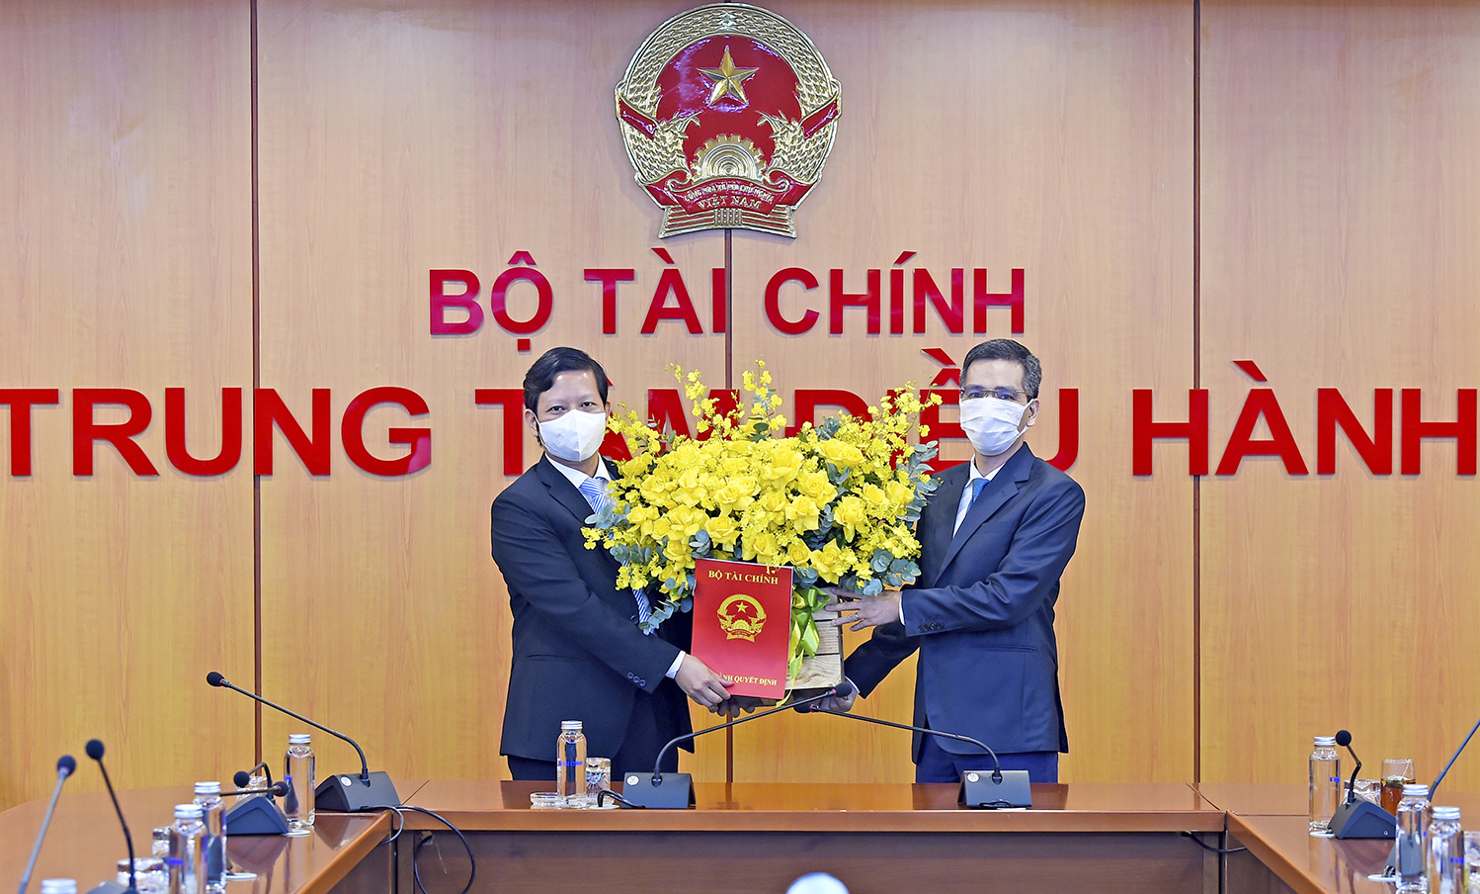 Thứ trưởng Võ Thành Hưng trao Quyết định điều động, bổ nhiệm Vụ trưởng Vụ Ngân sách Nhà nước đối với ông Phạm Văn Trường.